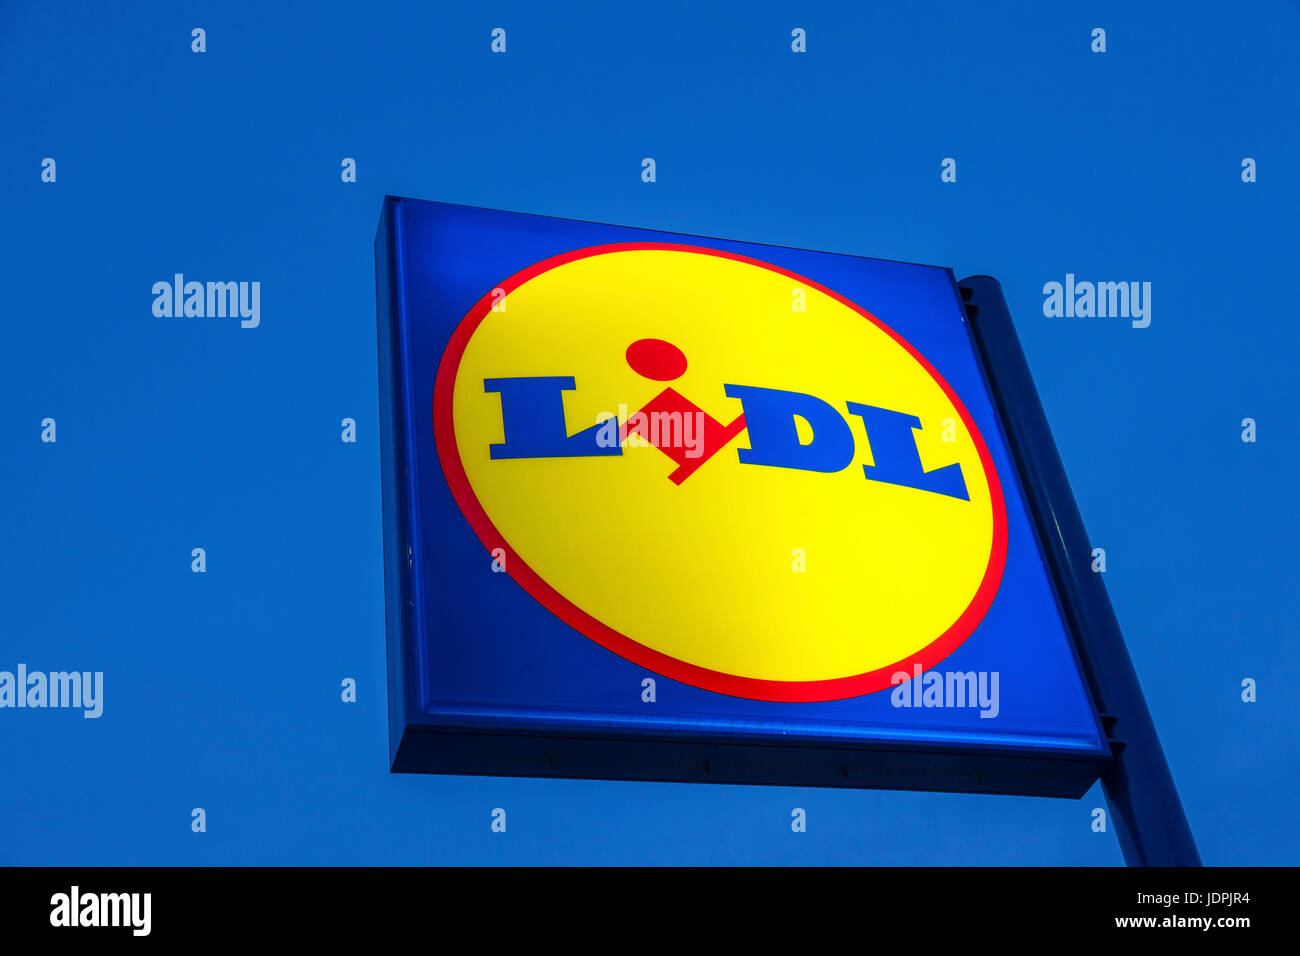 Cartagena, Espagne - 17 mai 2017 : logo Lidl supermarché allumé au crépuscule. Lidl est basée sur la chaîne de supermarchés discount allemande de Neckarsulm, Allemagne Banque D'Images